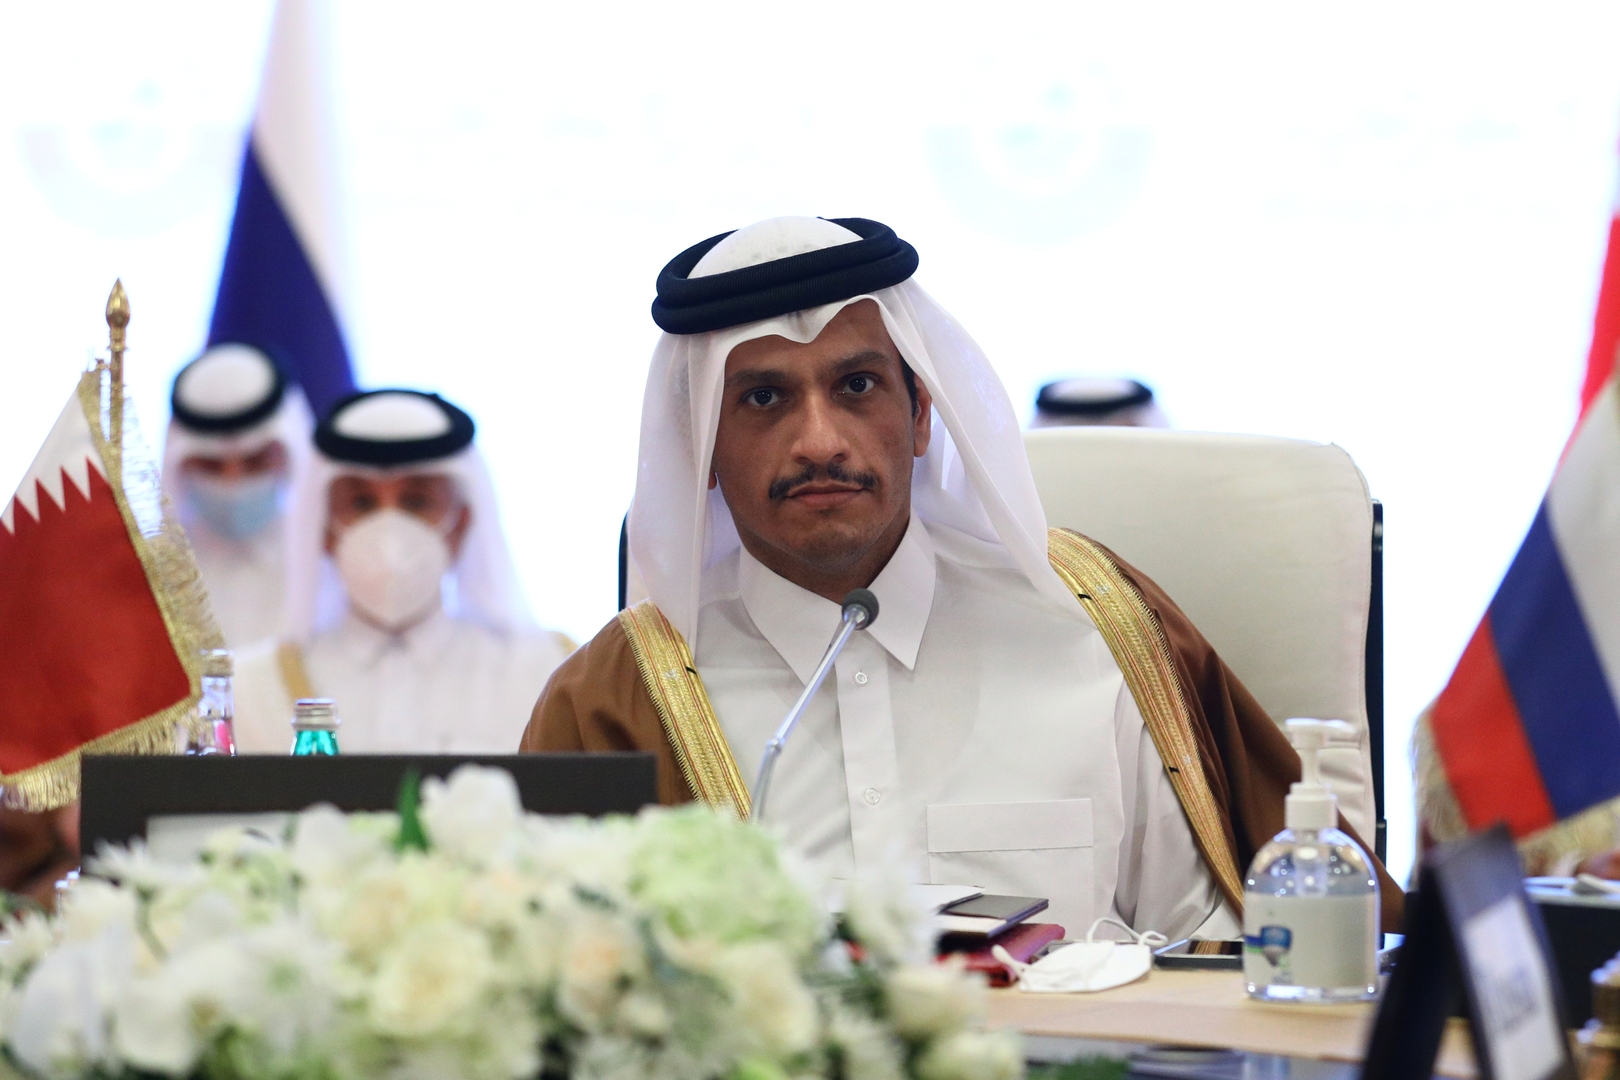 الدوحة: وزير خارجية قطر يزور موسكو اليوم لتأكيد غياب أي بديل عن الحل السلمي في أوكرانيا